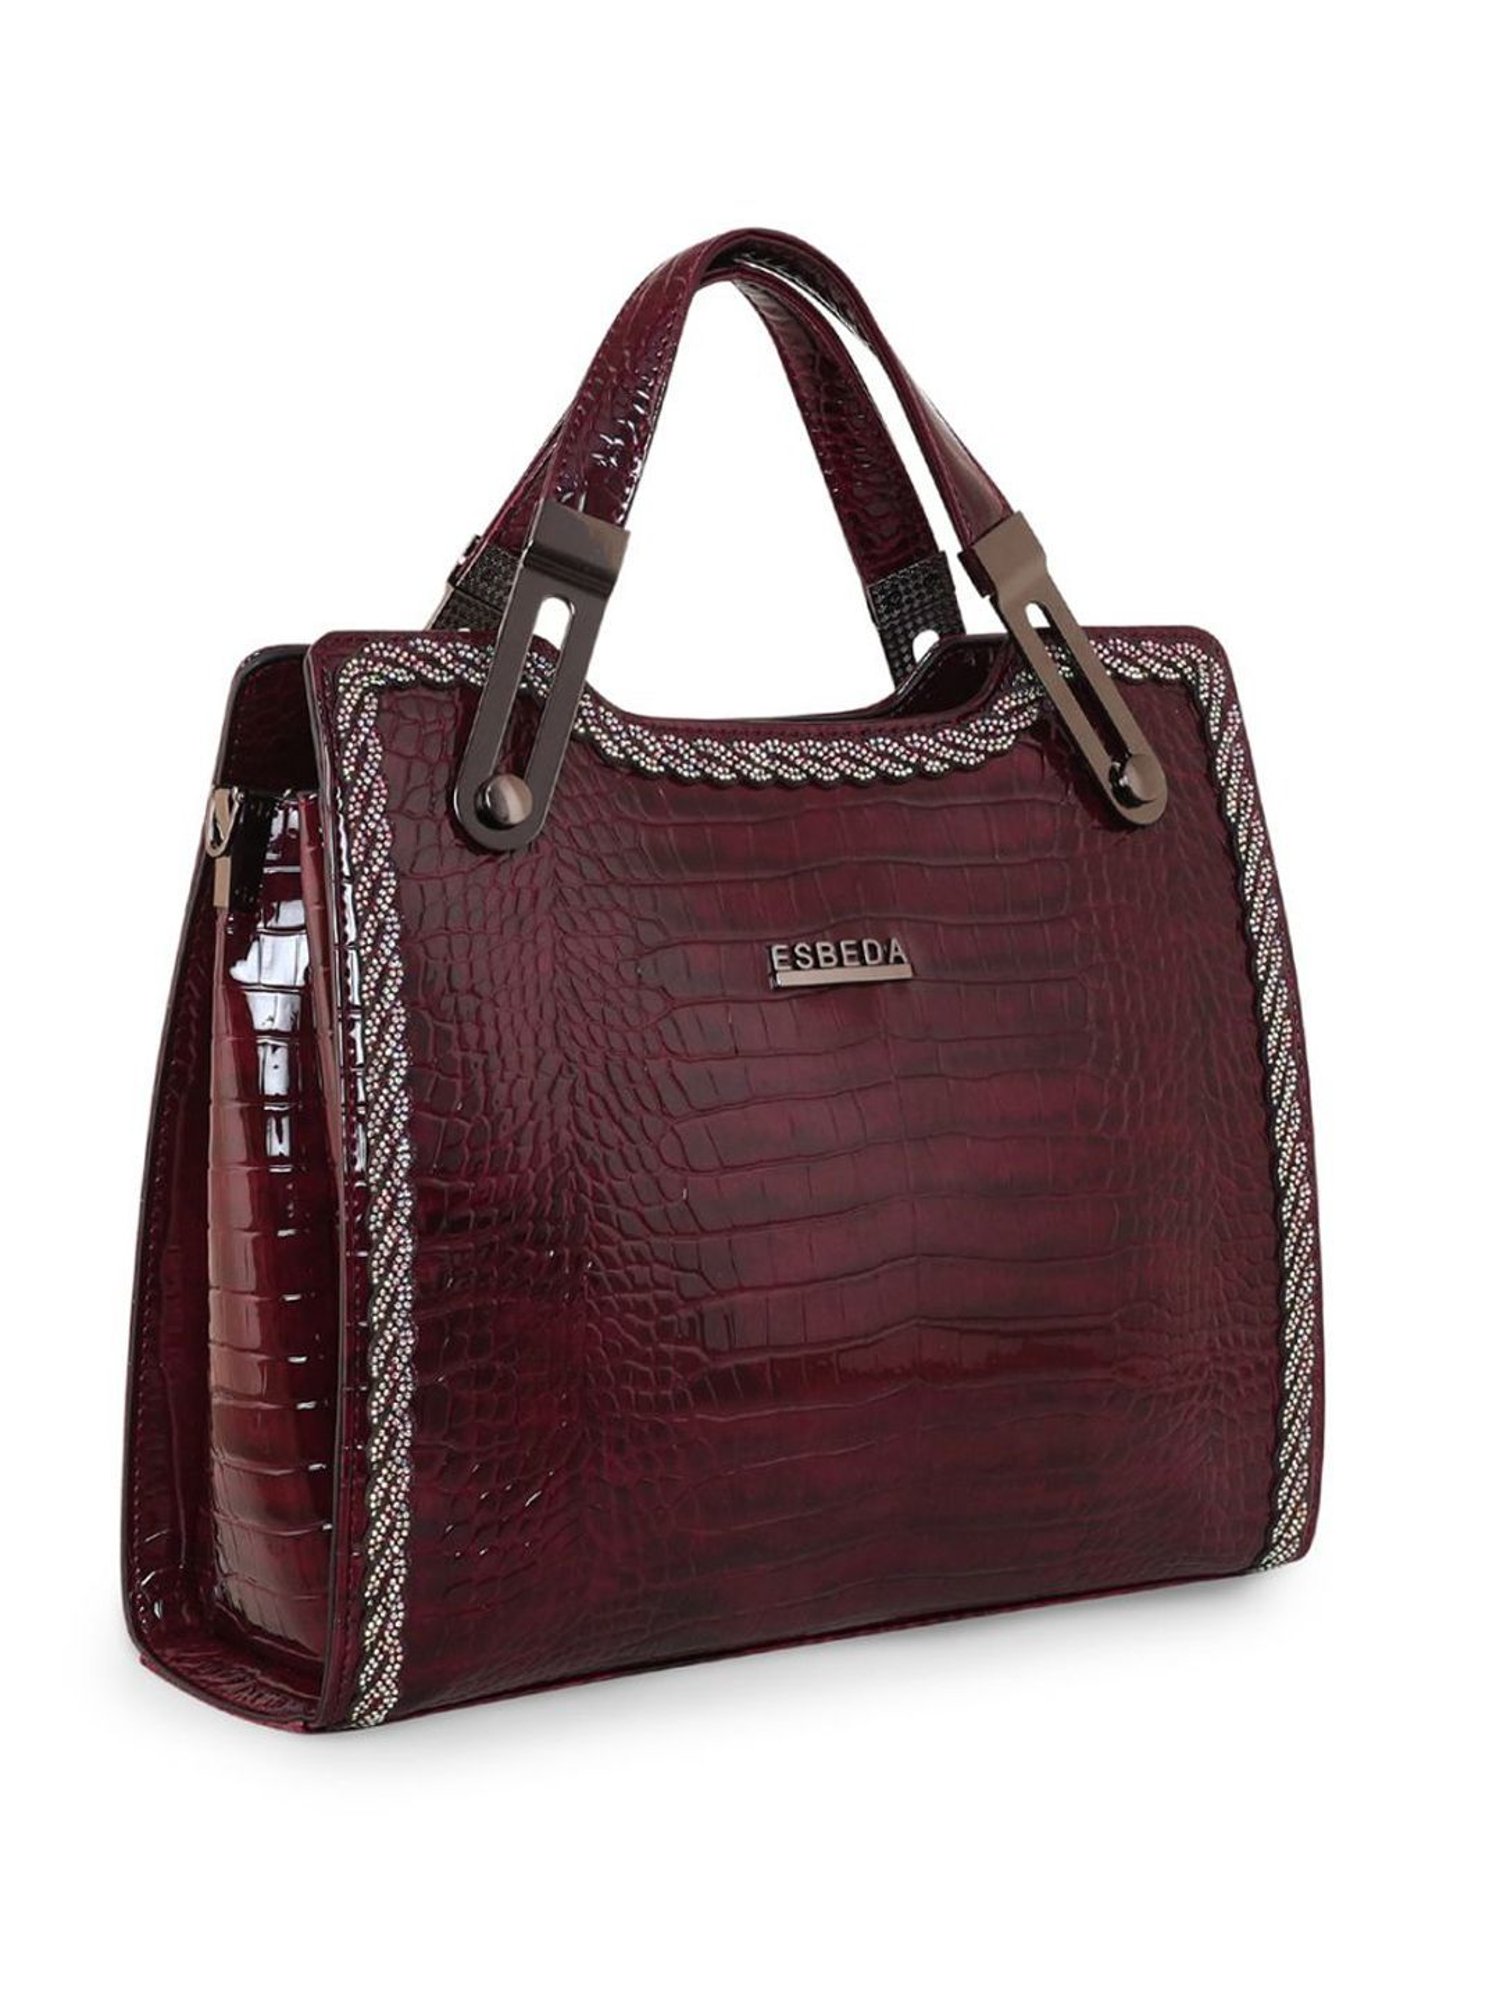 ESBEDA Brown Color Luxury Closet Top Handle Handbag For Women